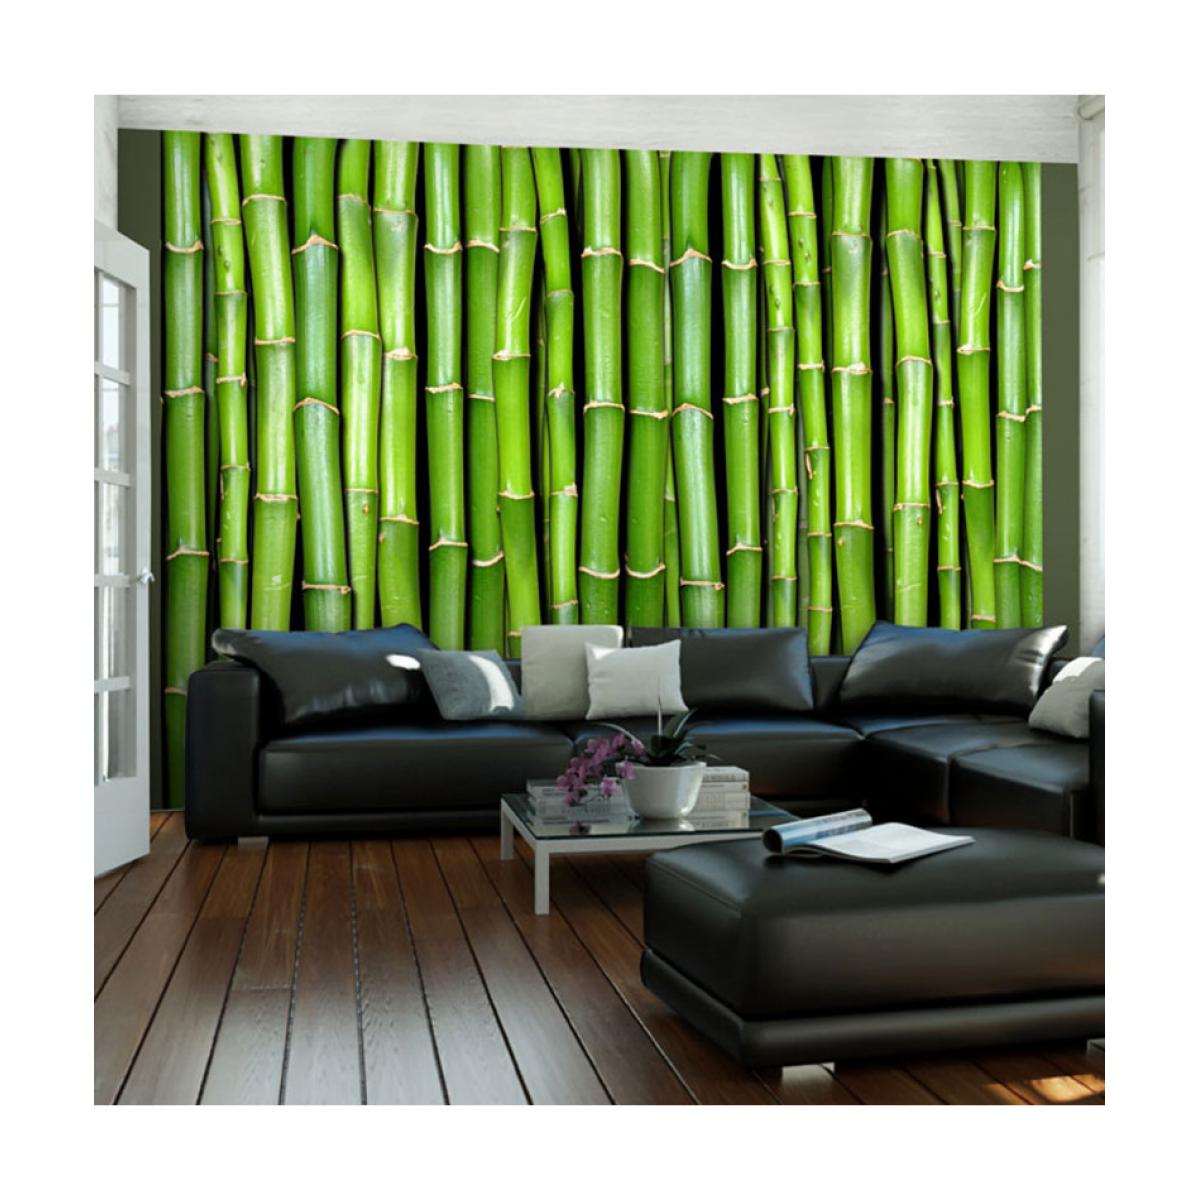 Artgeist - Papier peint - Mur vert bambou 400x309 - Papier peint